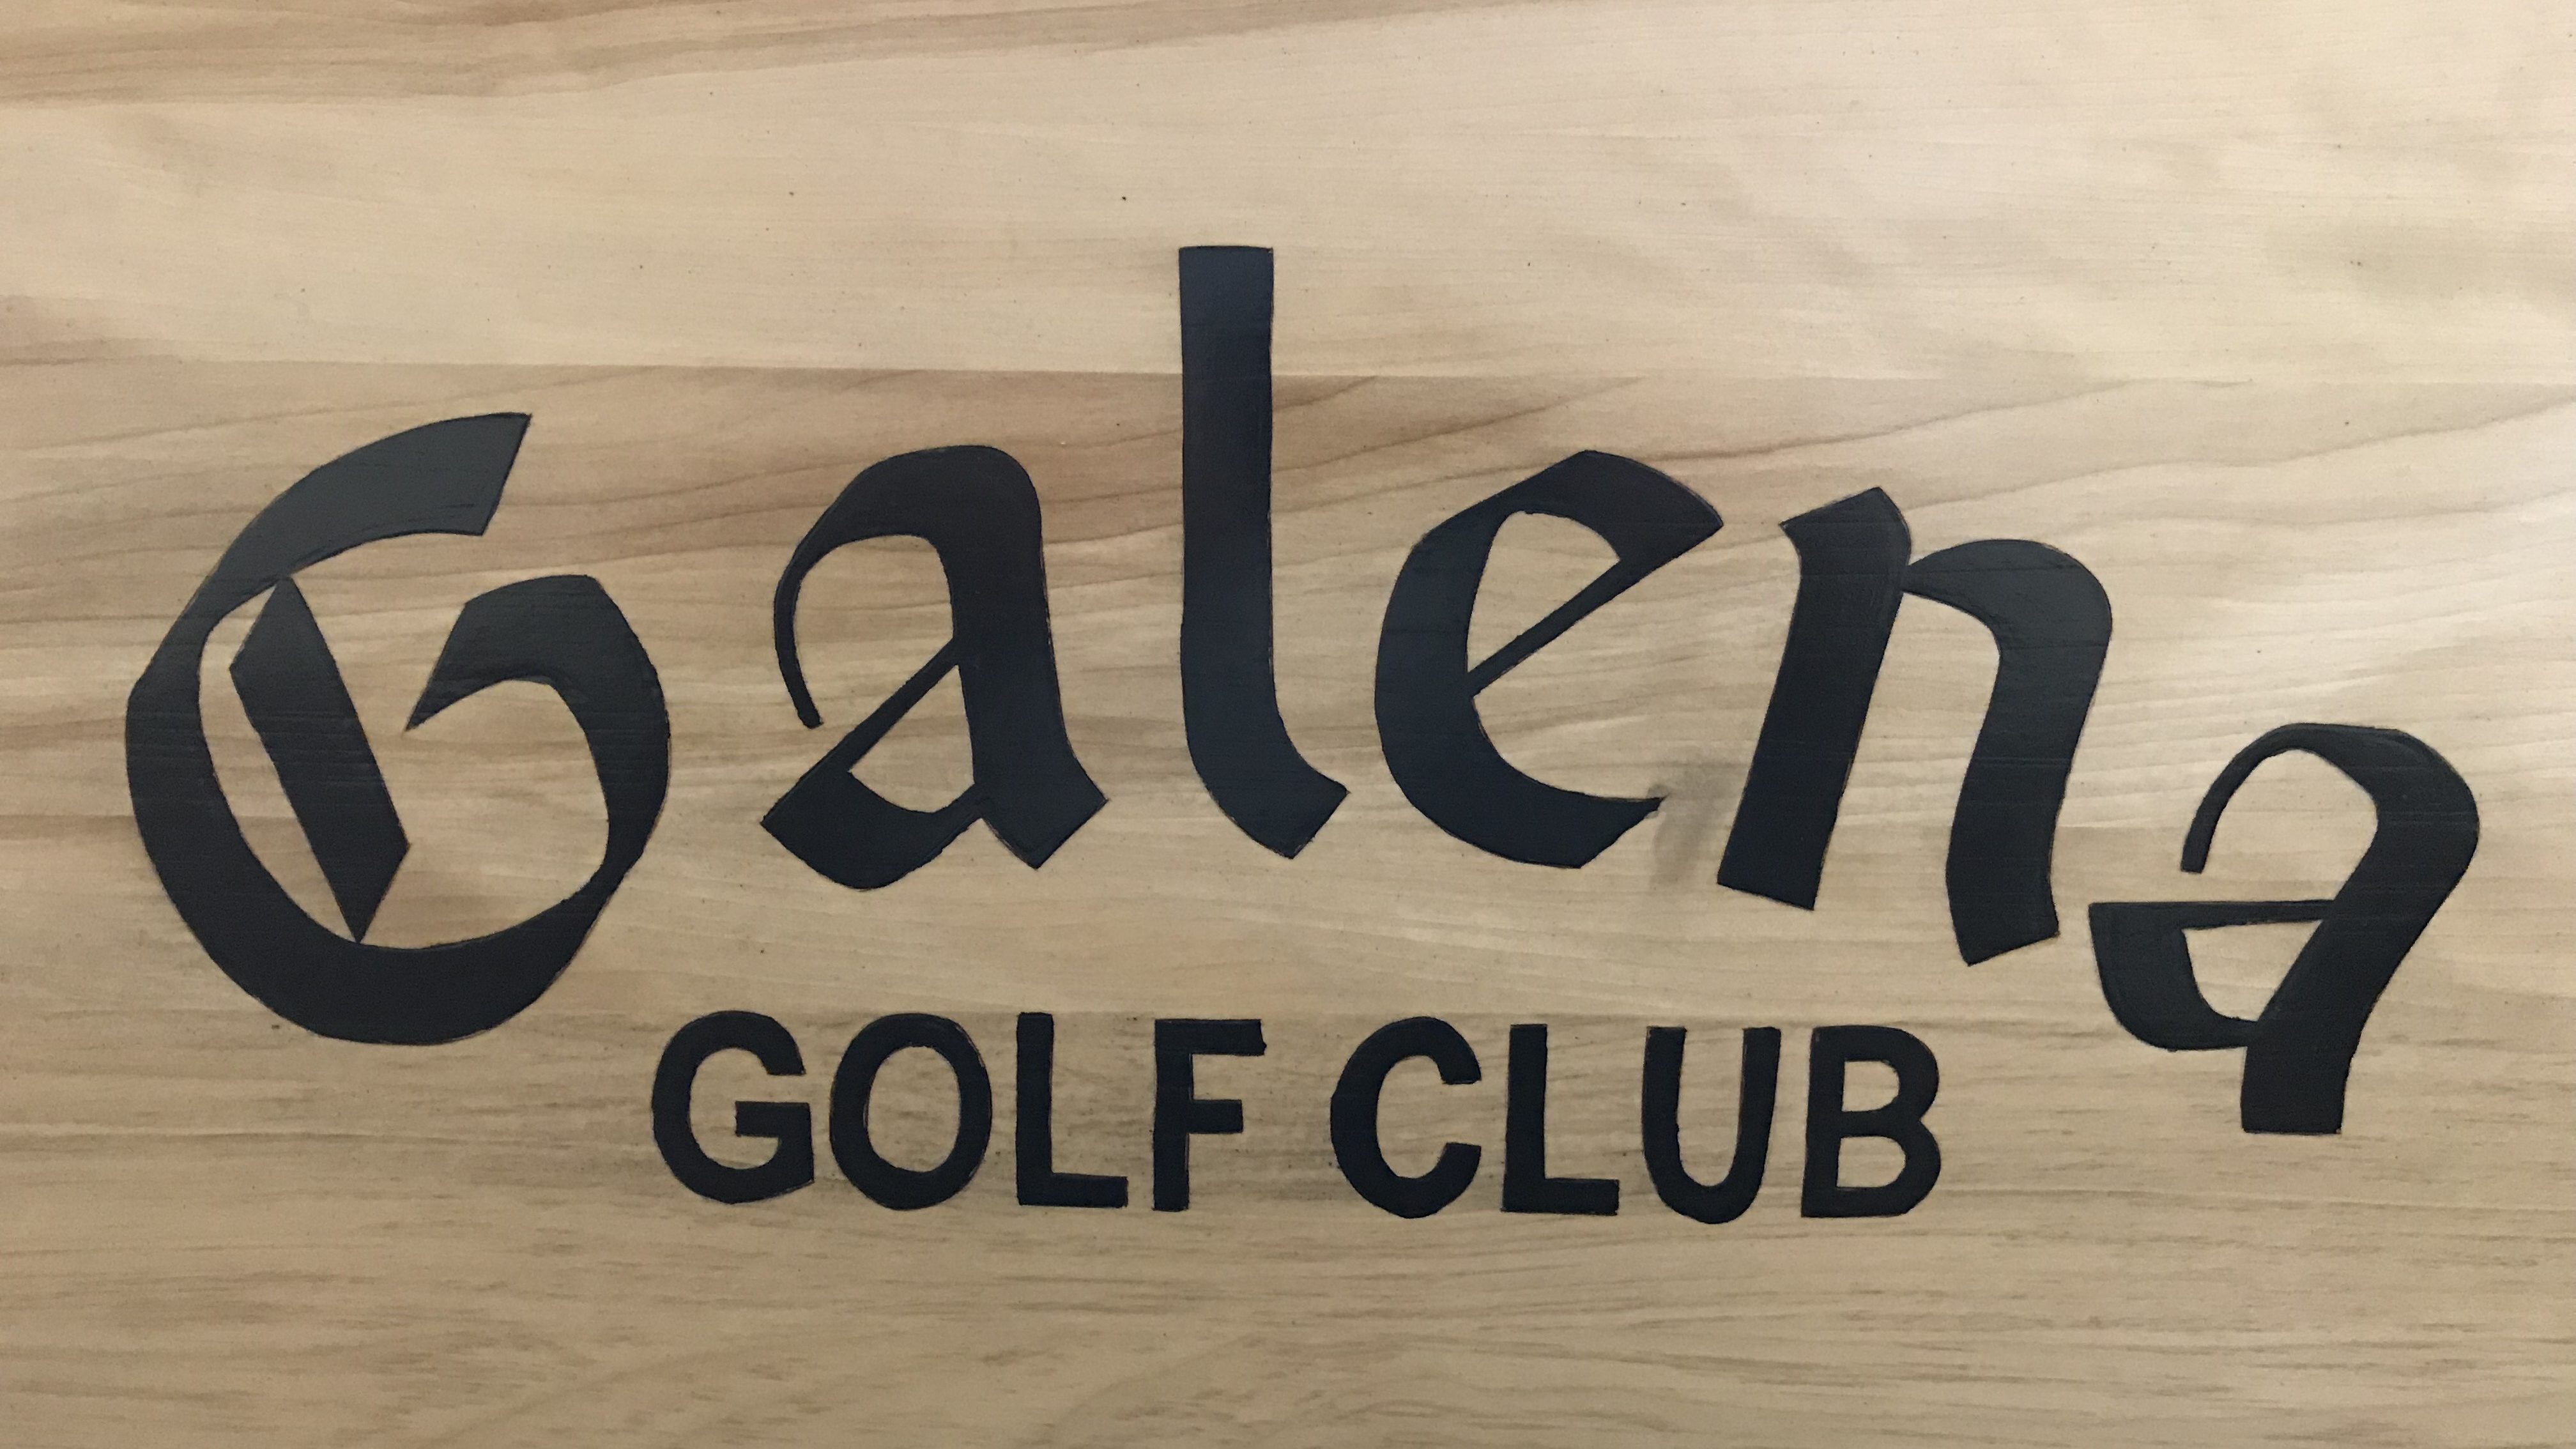 Galena Golf Club Bowling